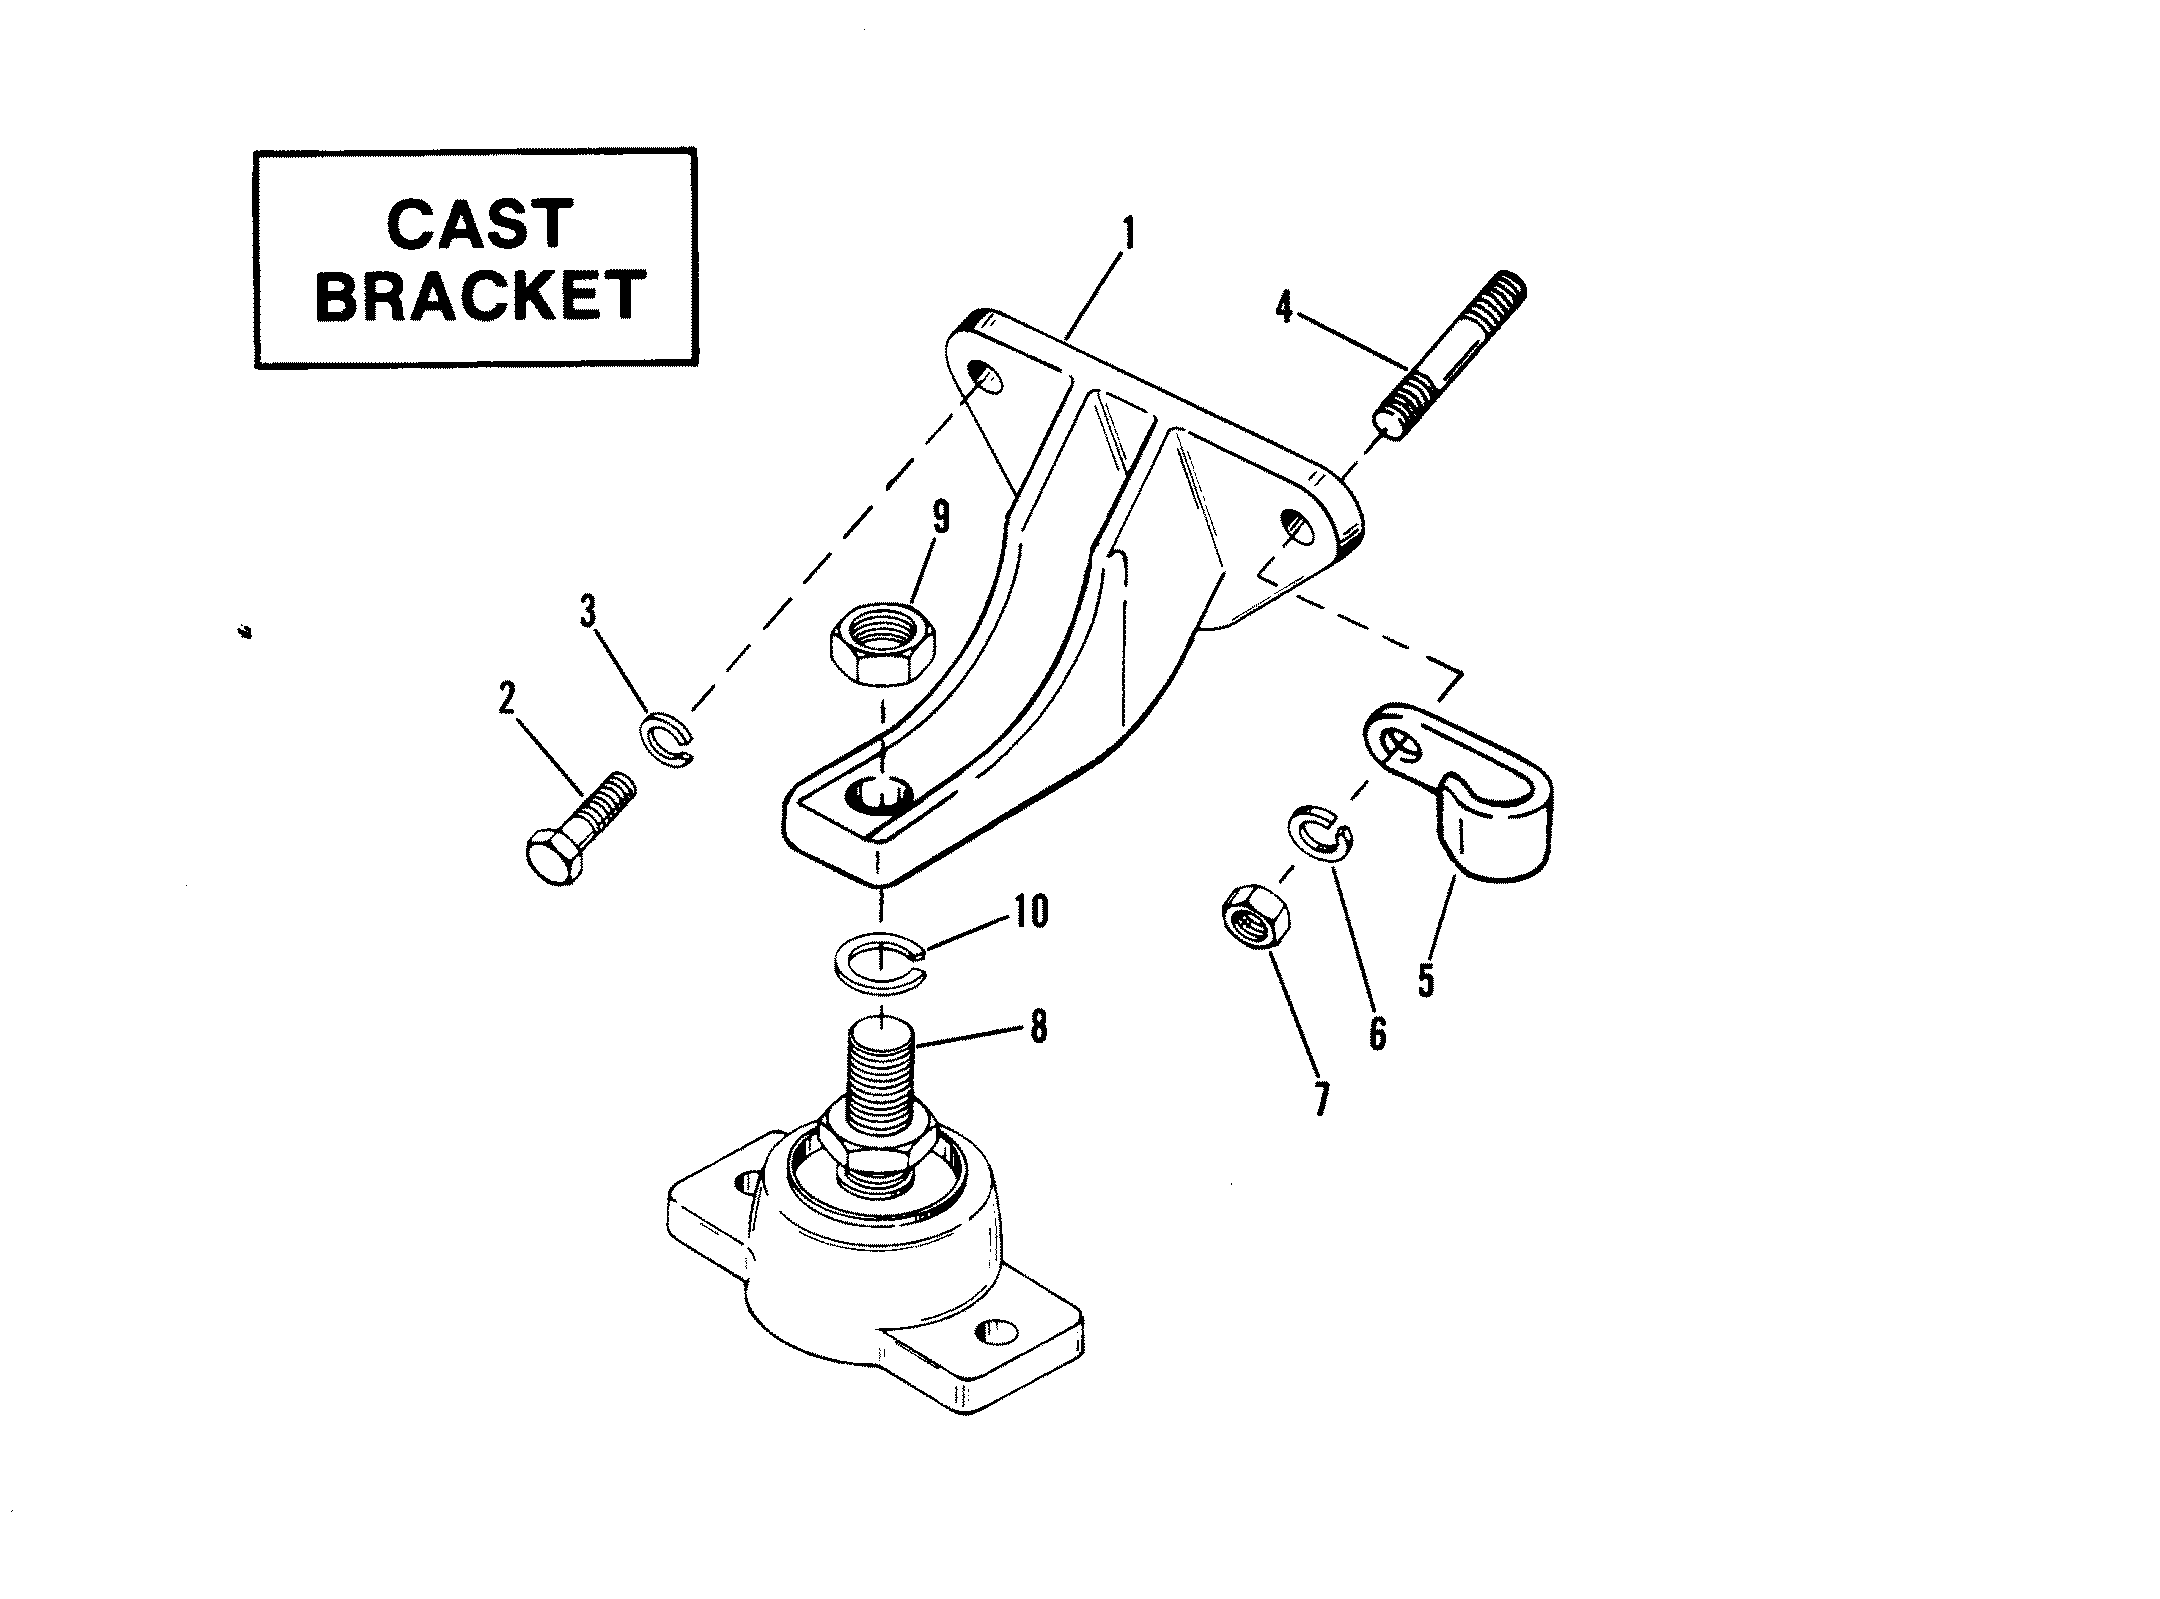 ENGINE MOUNTING (CAST BRACKET)